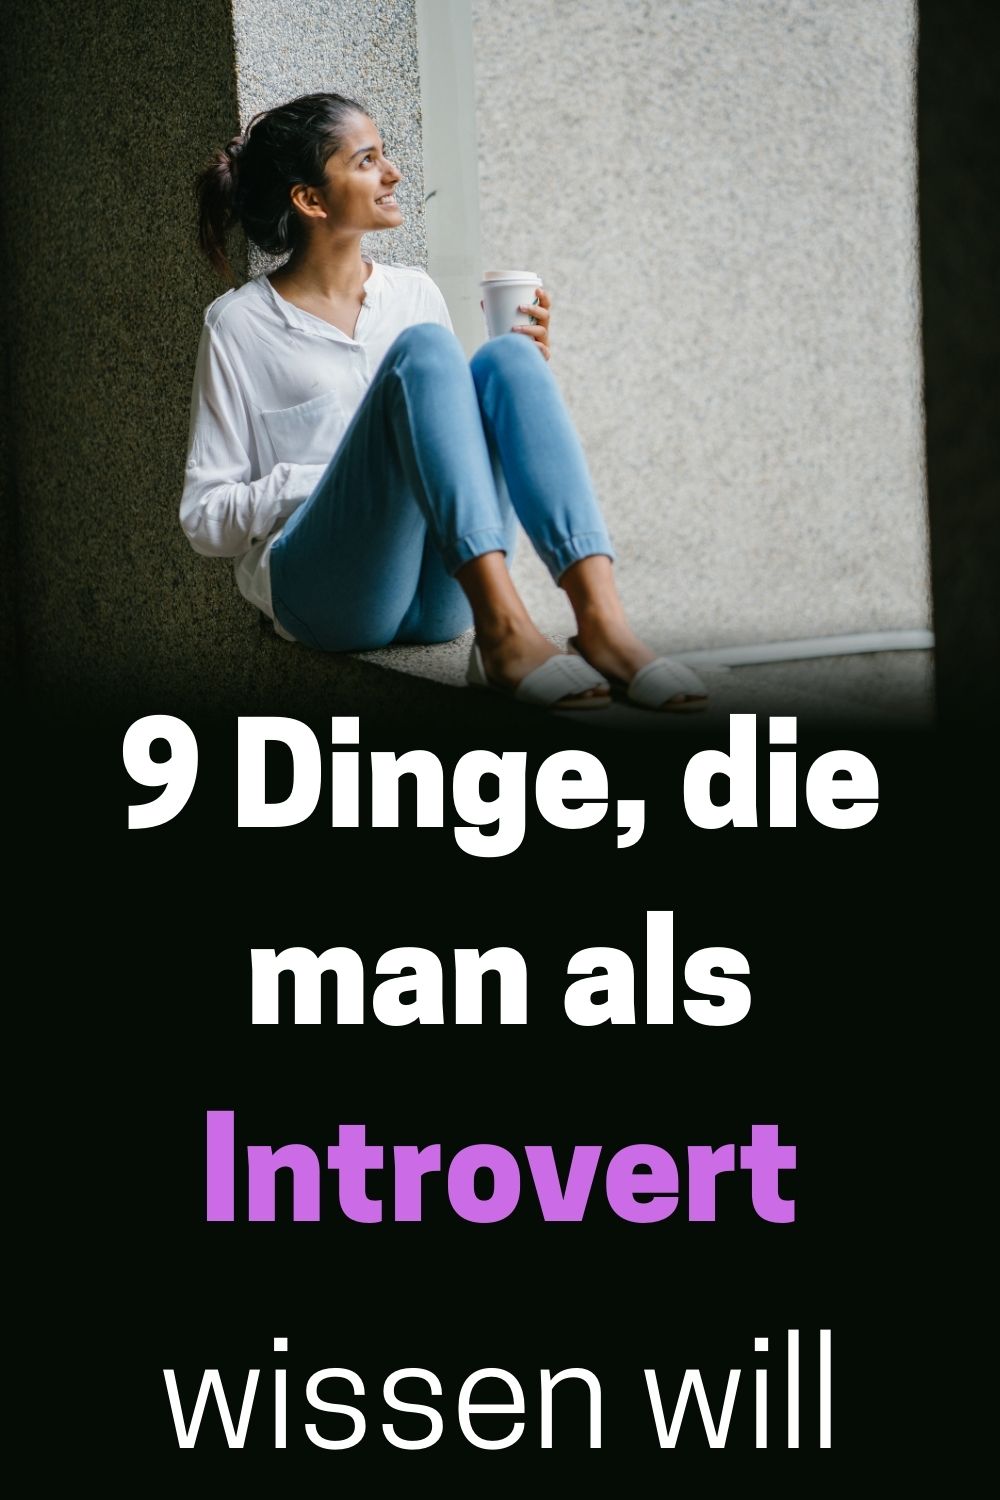 9-Dinge-die-man-als-Introvert-wissen-will